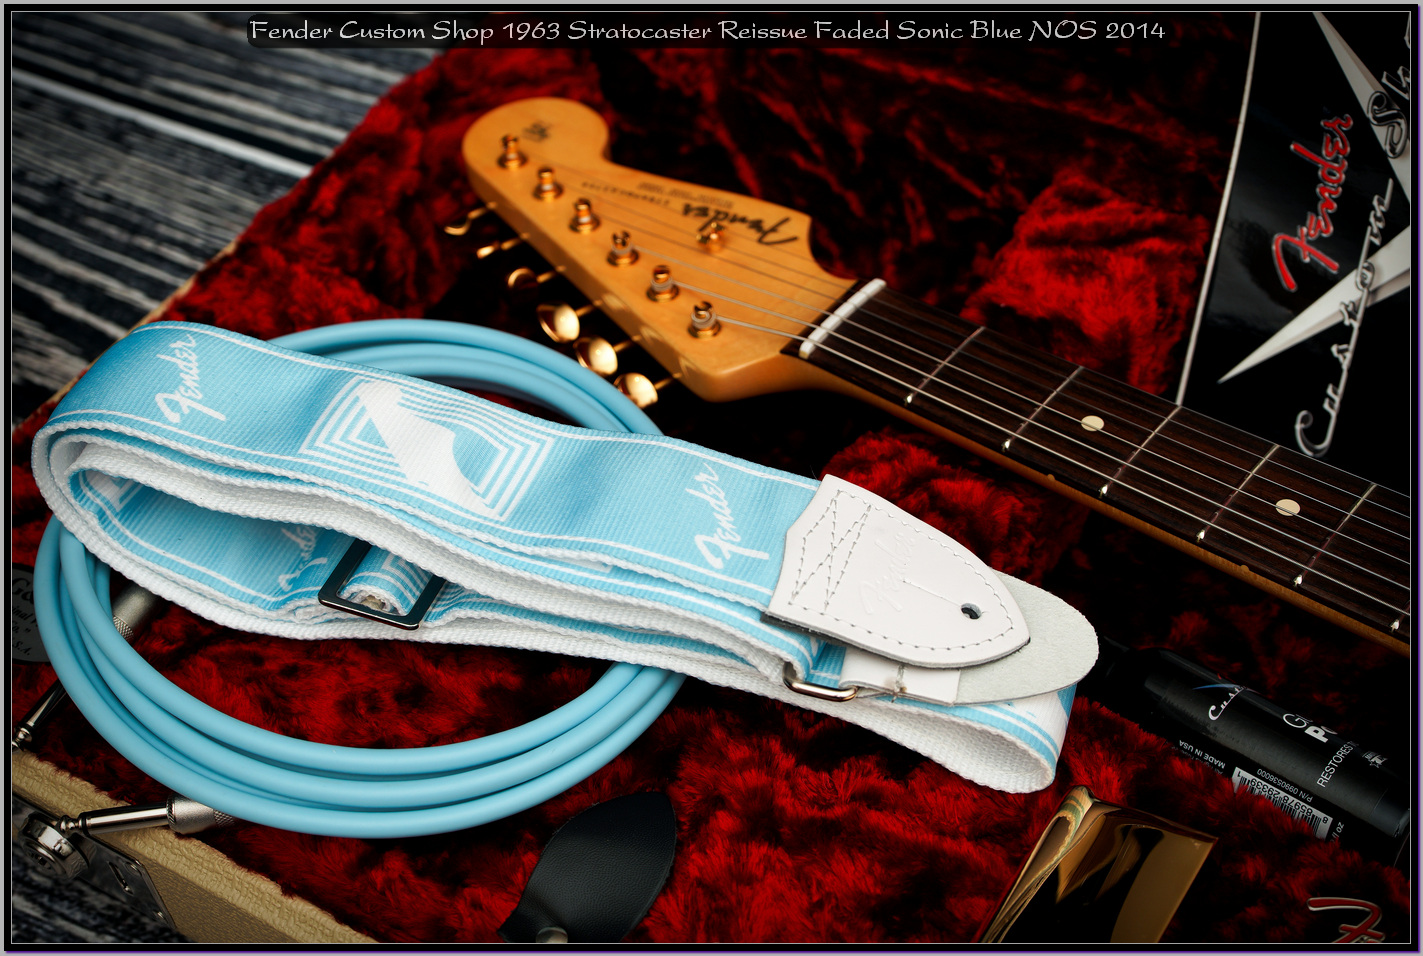 Fender Custom Shop 1963 Stratocaster Reissue Faded Sonic Blue NOS 2014 12_x1400.jpg